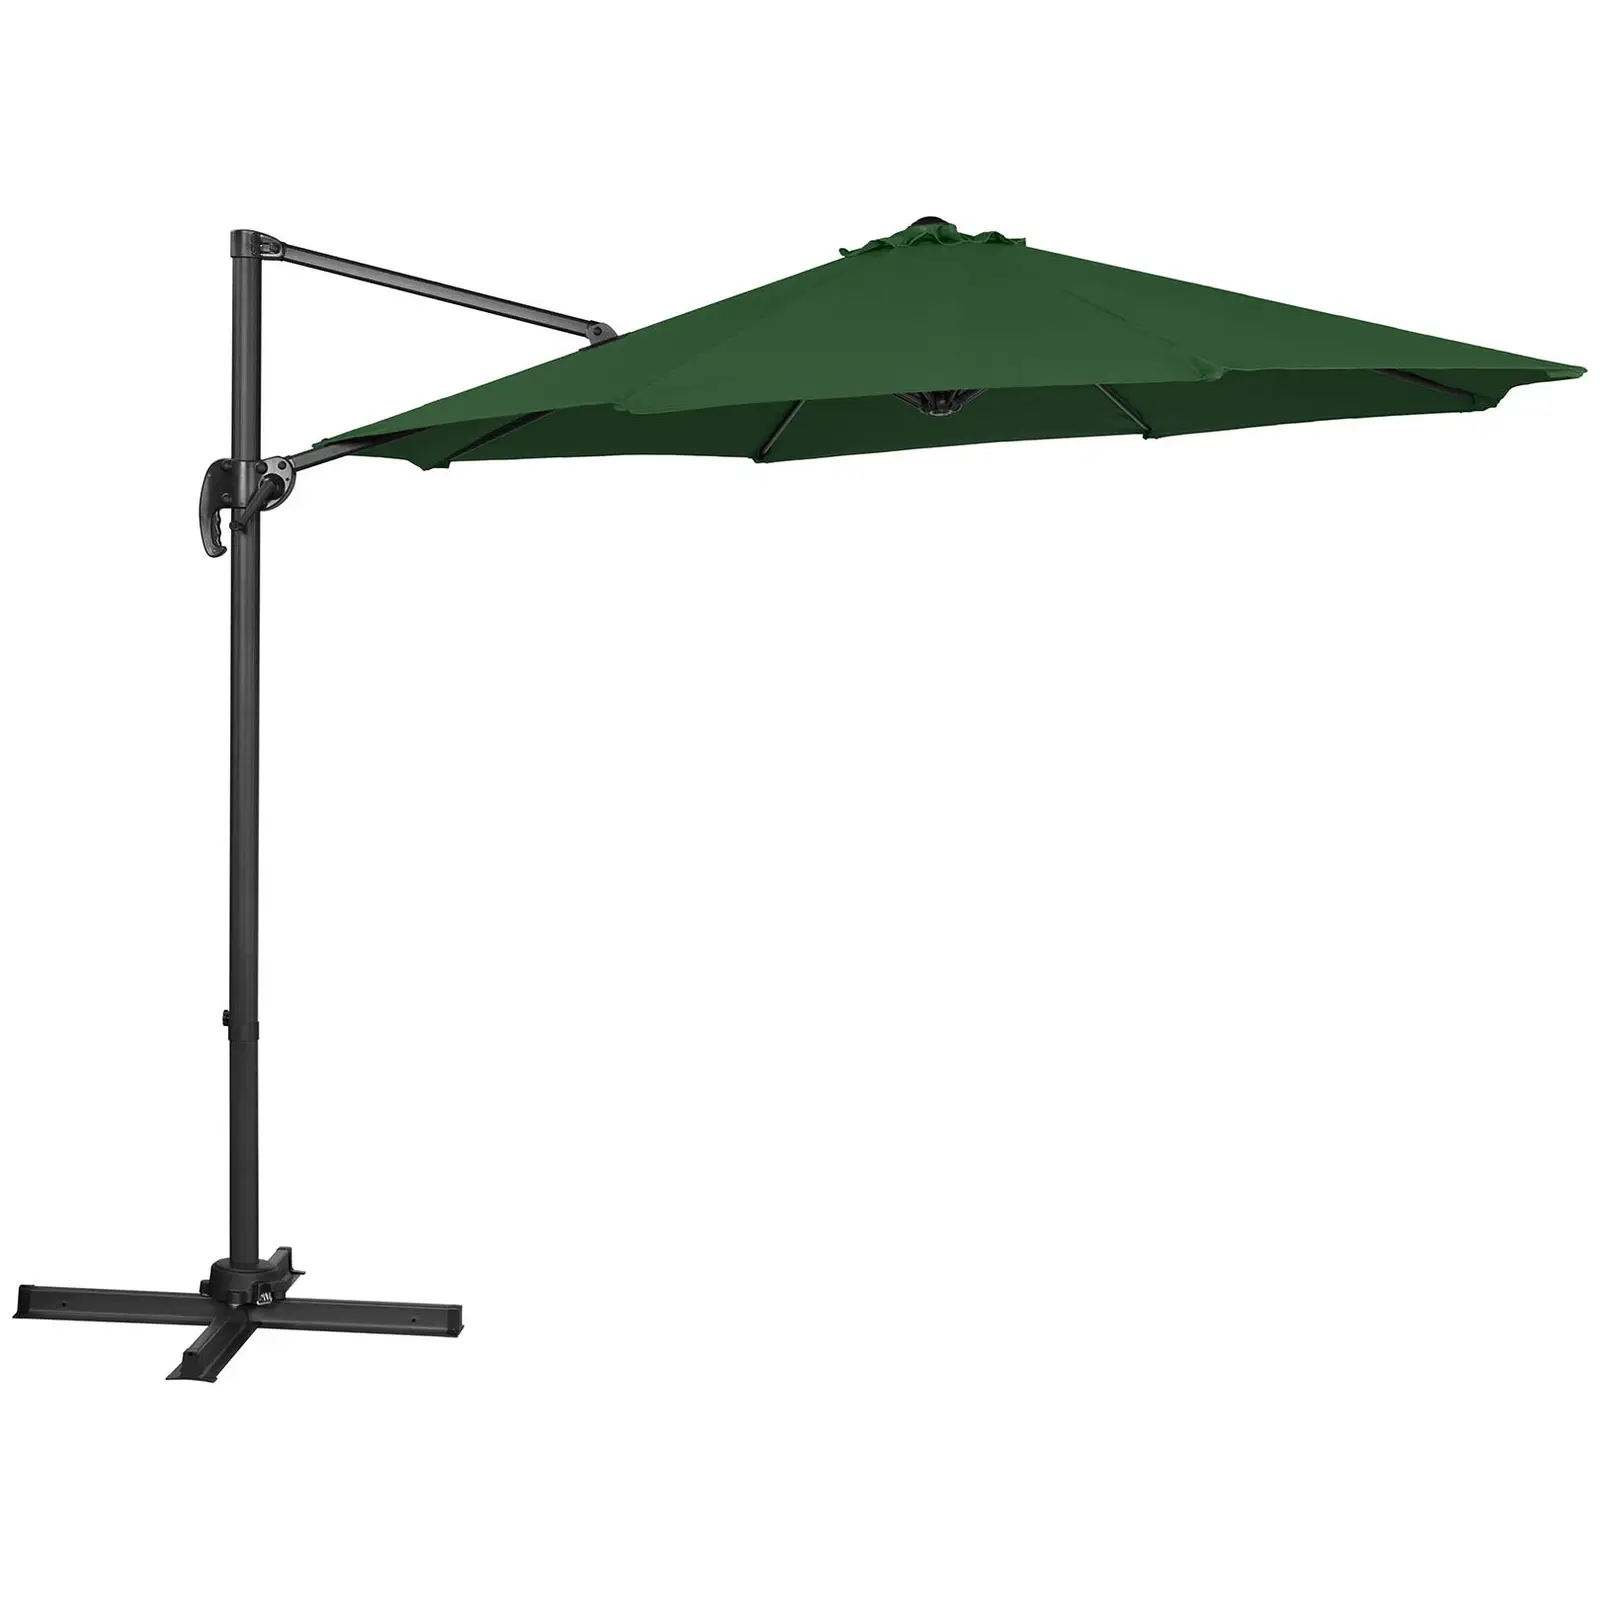 Aurinkovarjo - vihreä - pyöreä - Ø 300 cm - kallistettava ja käännettävä